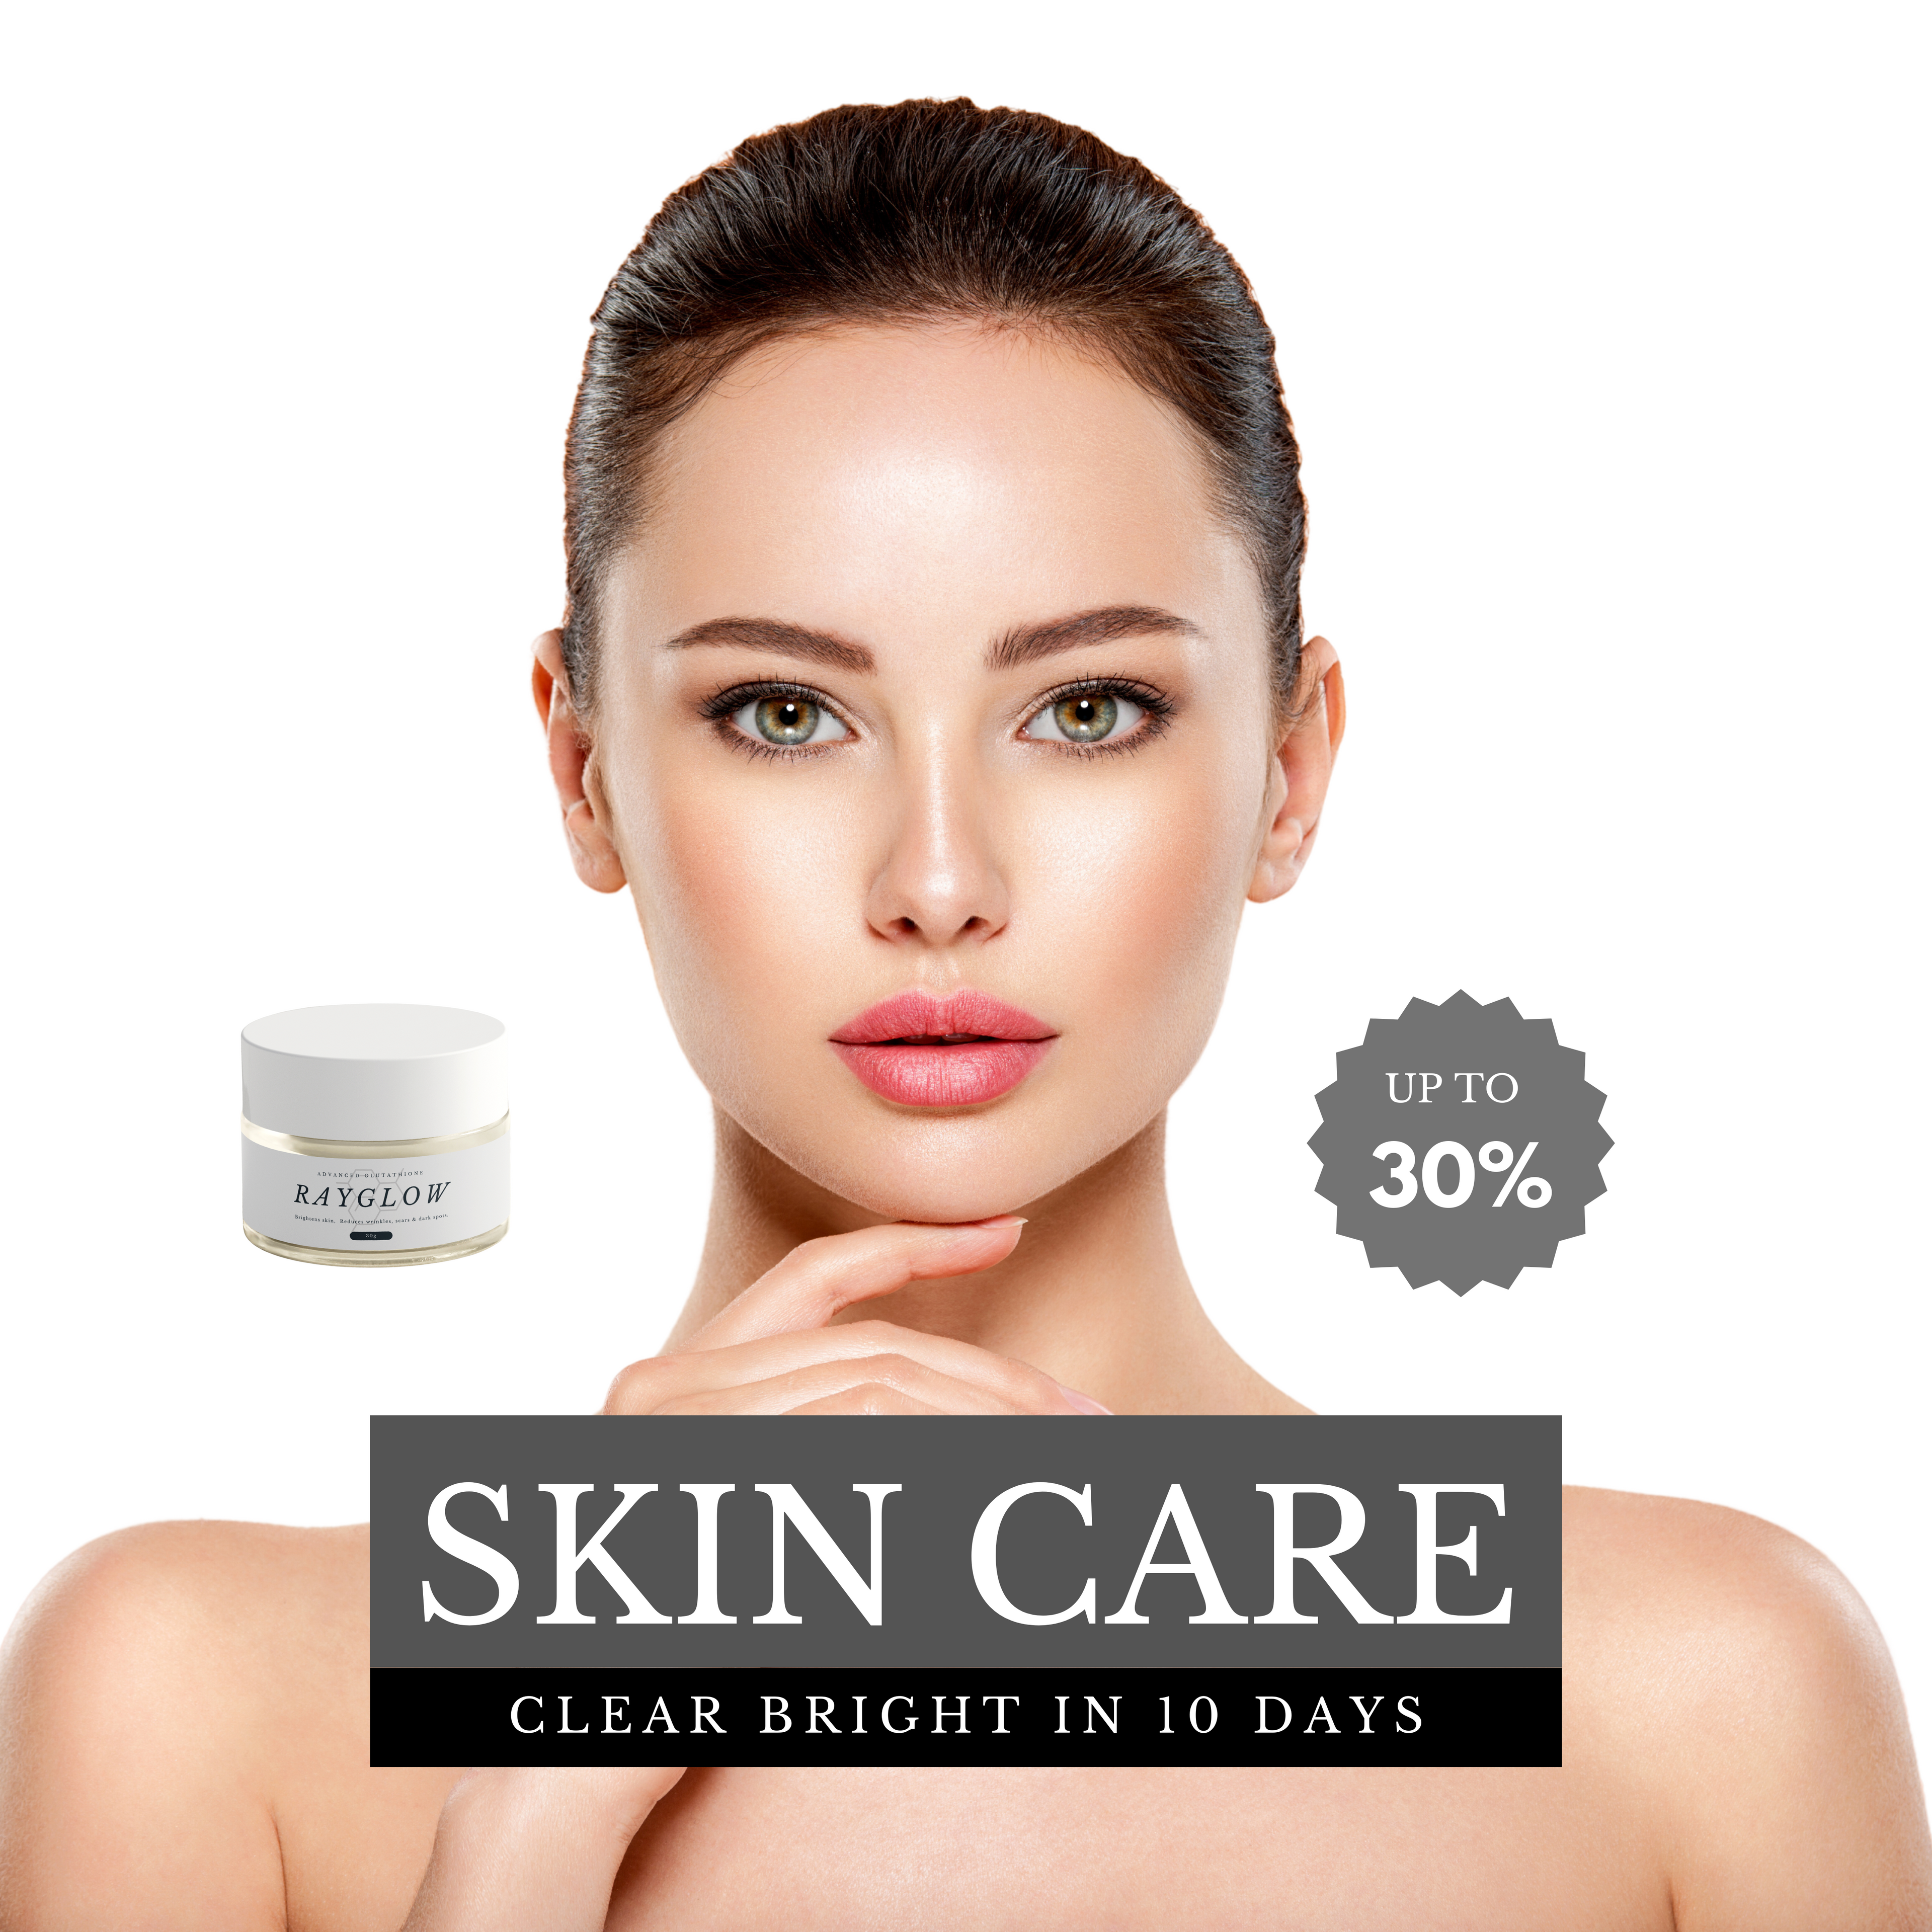 Rayglow-Glutathione Skin Whitening Cream